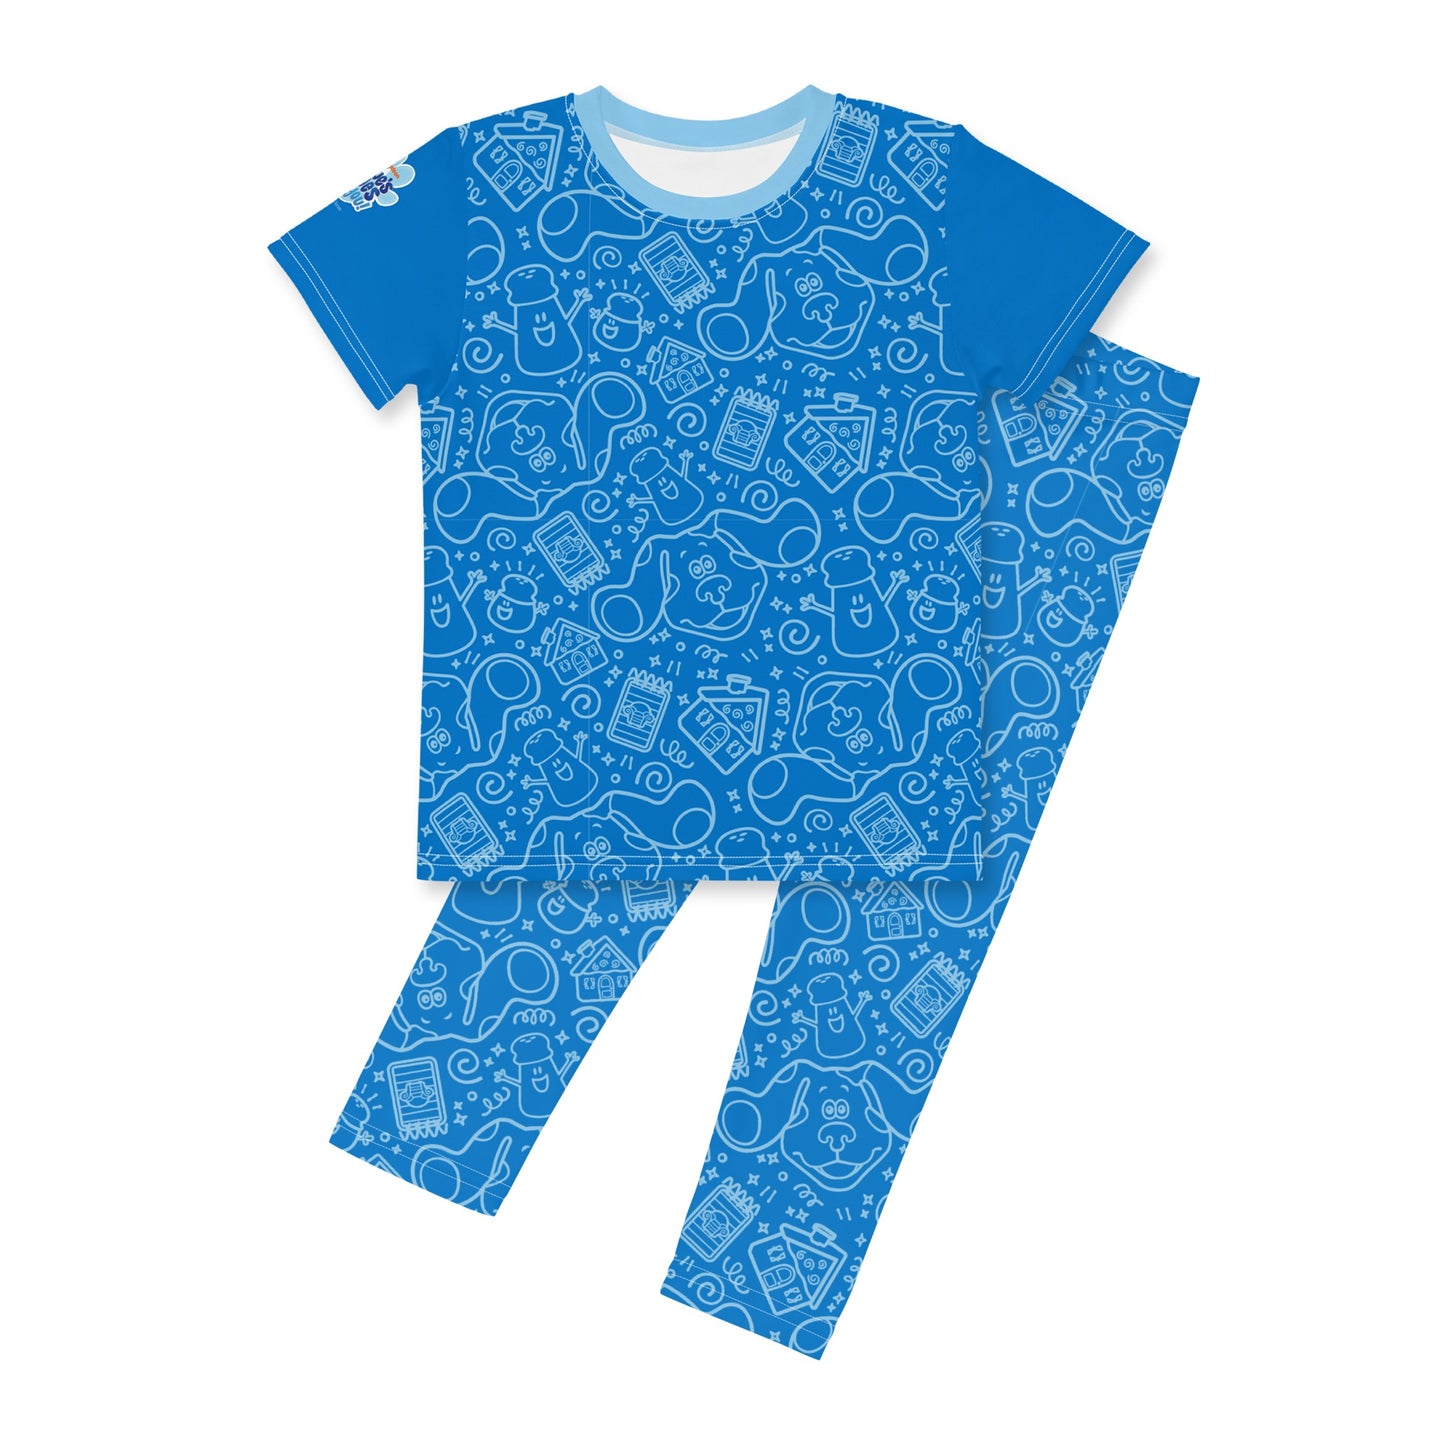 Blue's Clues & Du! Freunde Muster Kinder T-Shirt mit kurzen Ärmeln